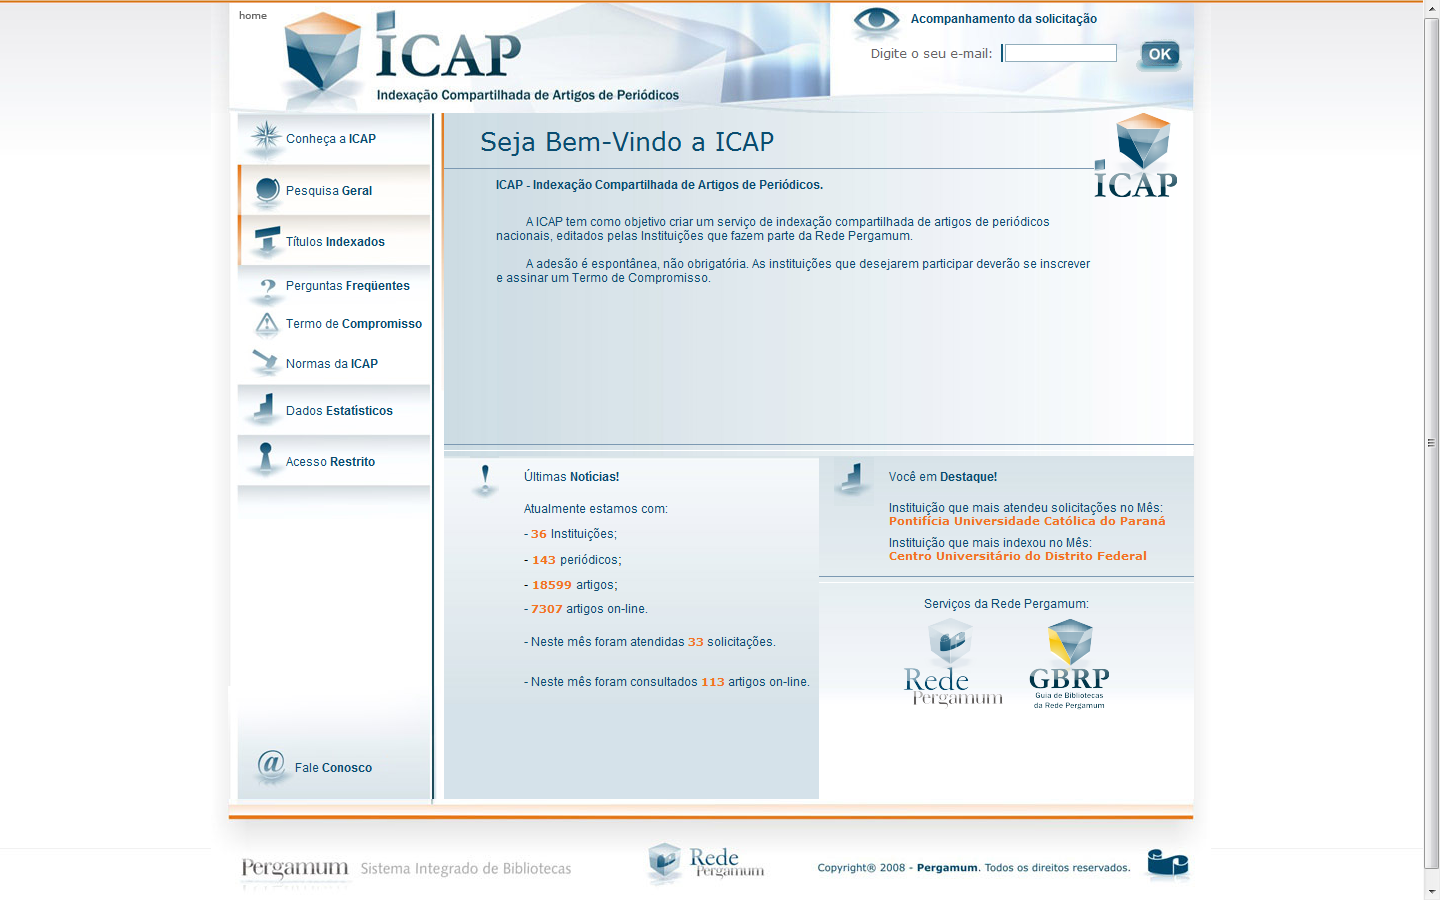 ICAP Indexação Compartilhada de Artigos de Periódicos A ICAP tem como objetivo criar um serviço de indexação compartilhada de